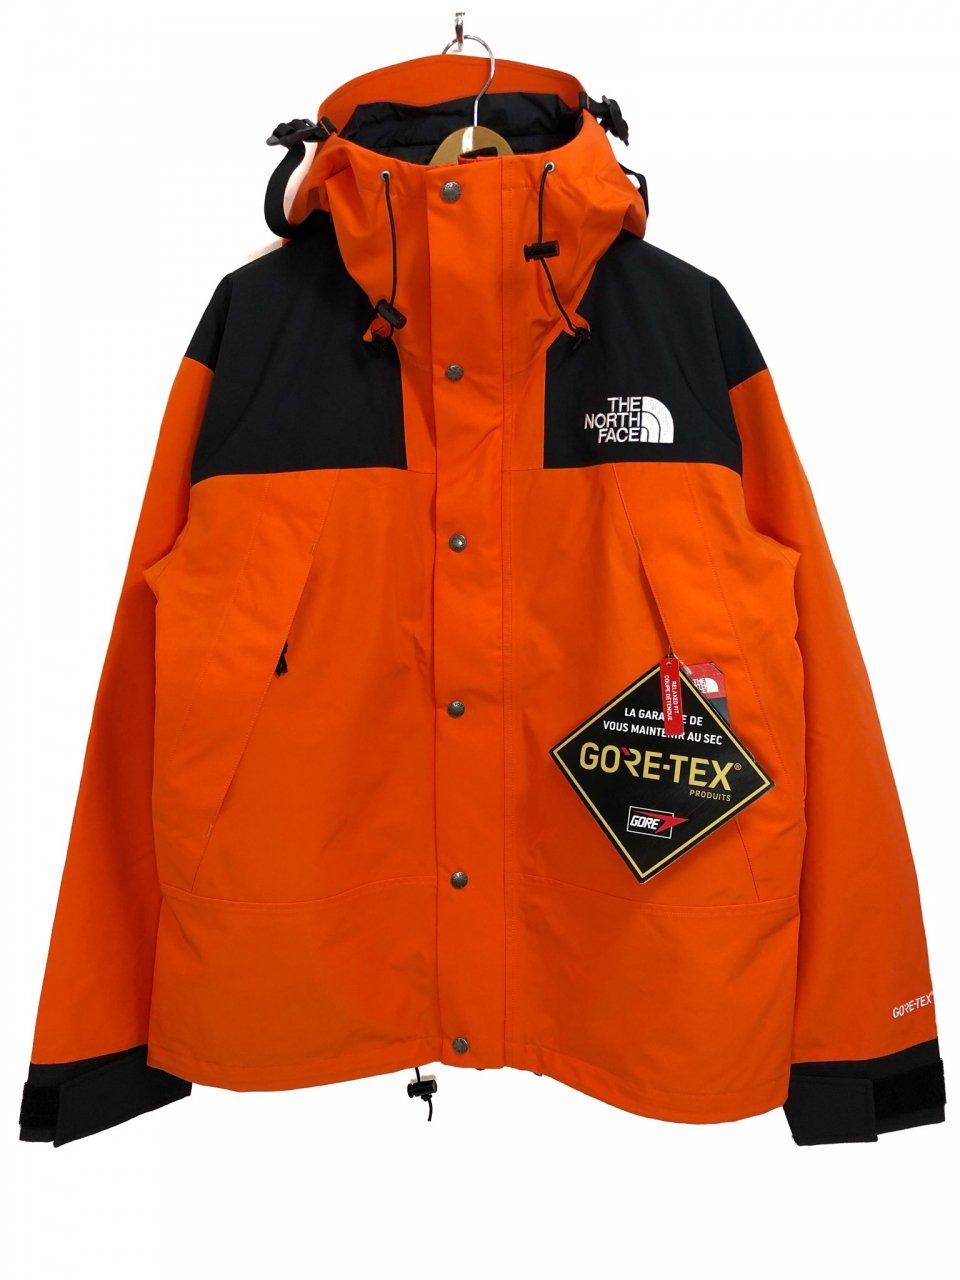 日本未発売 THE NORTH FACE 1990 Mountain Jacket GORE-TEX (ORANGE) ノースフェイス 1990  マウンテン ジャケット ゴアテックス 復刻 - NEWJOKE ONLINE STORE